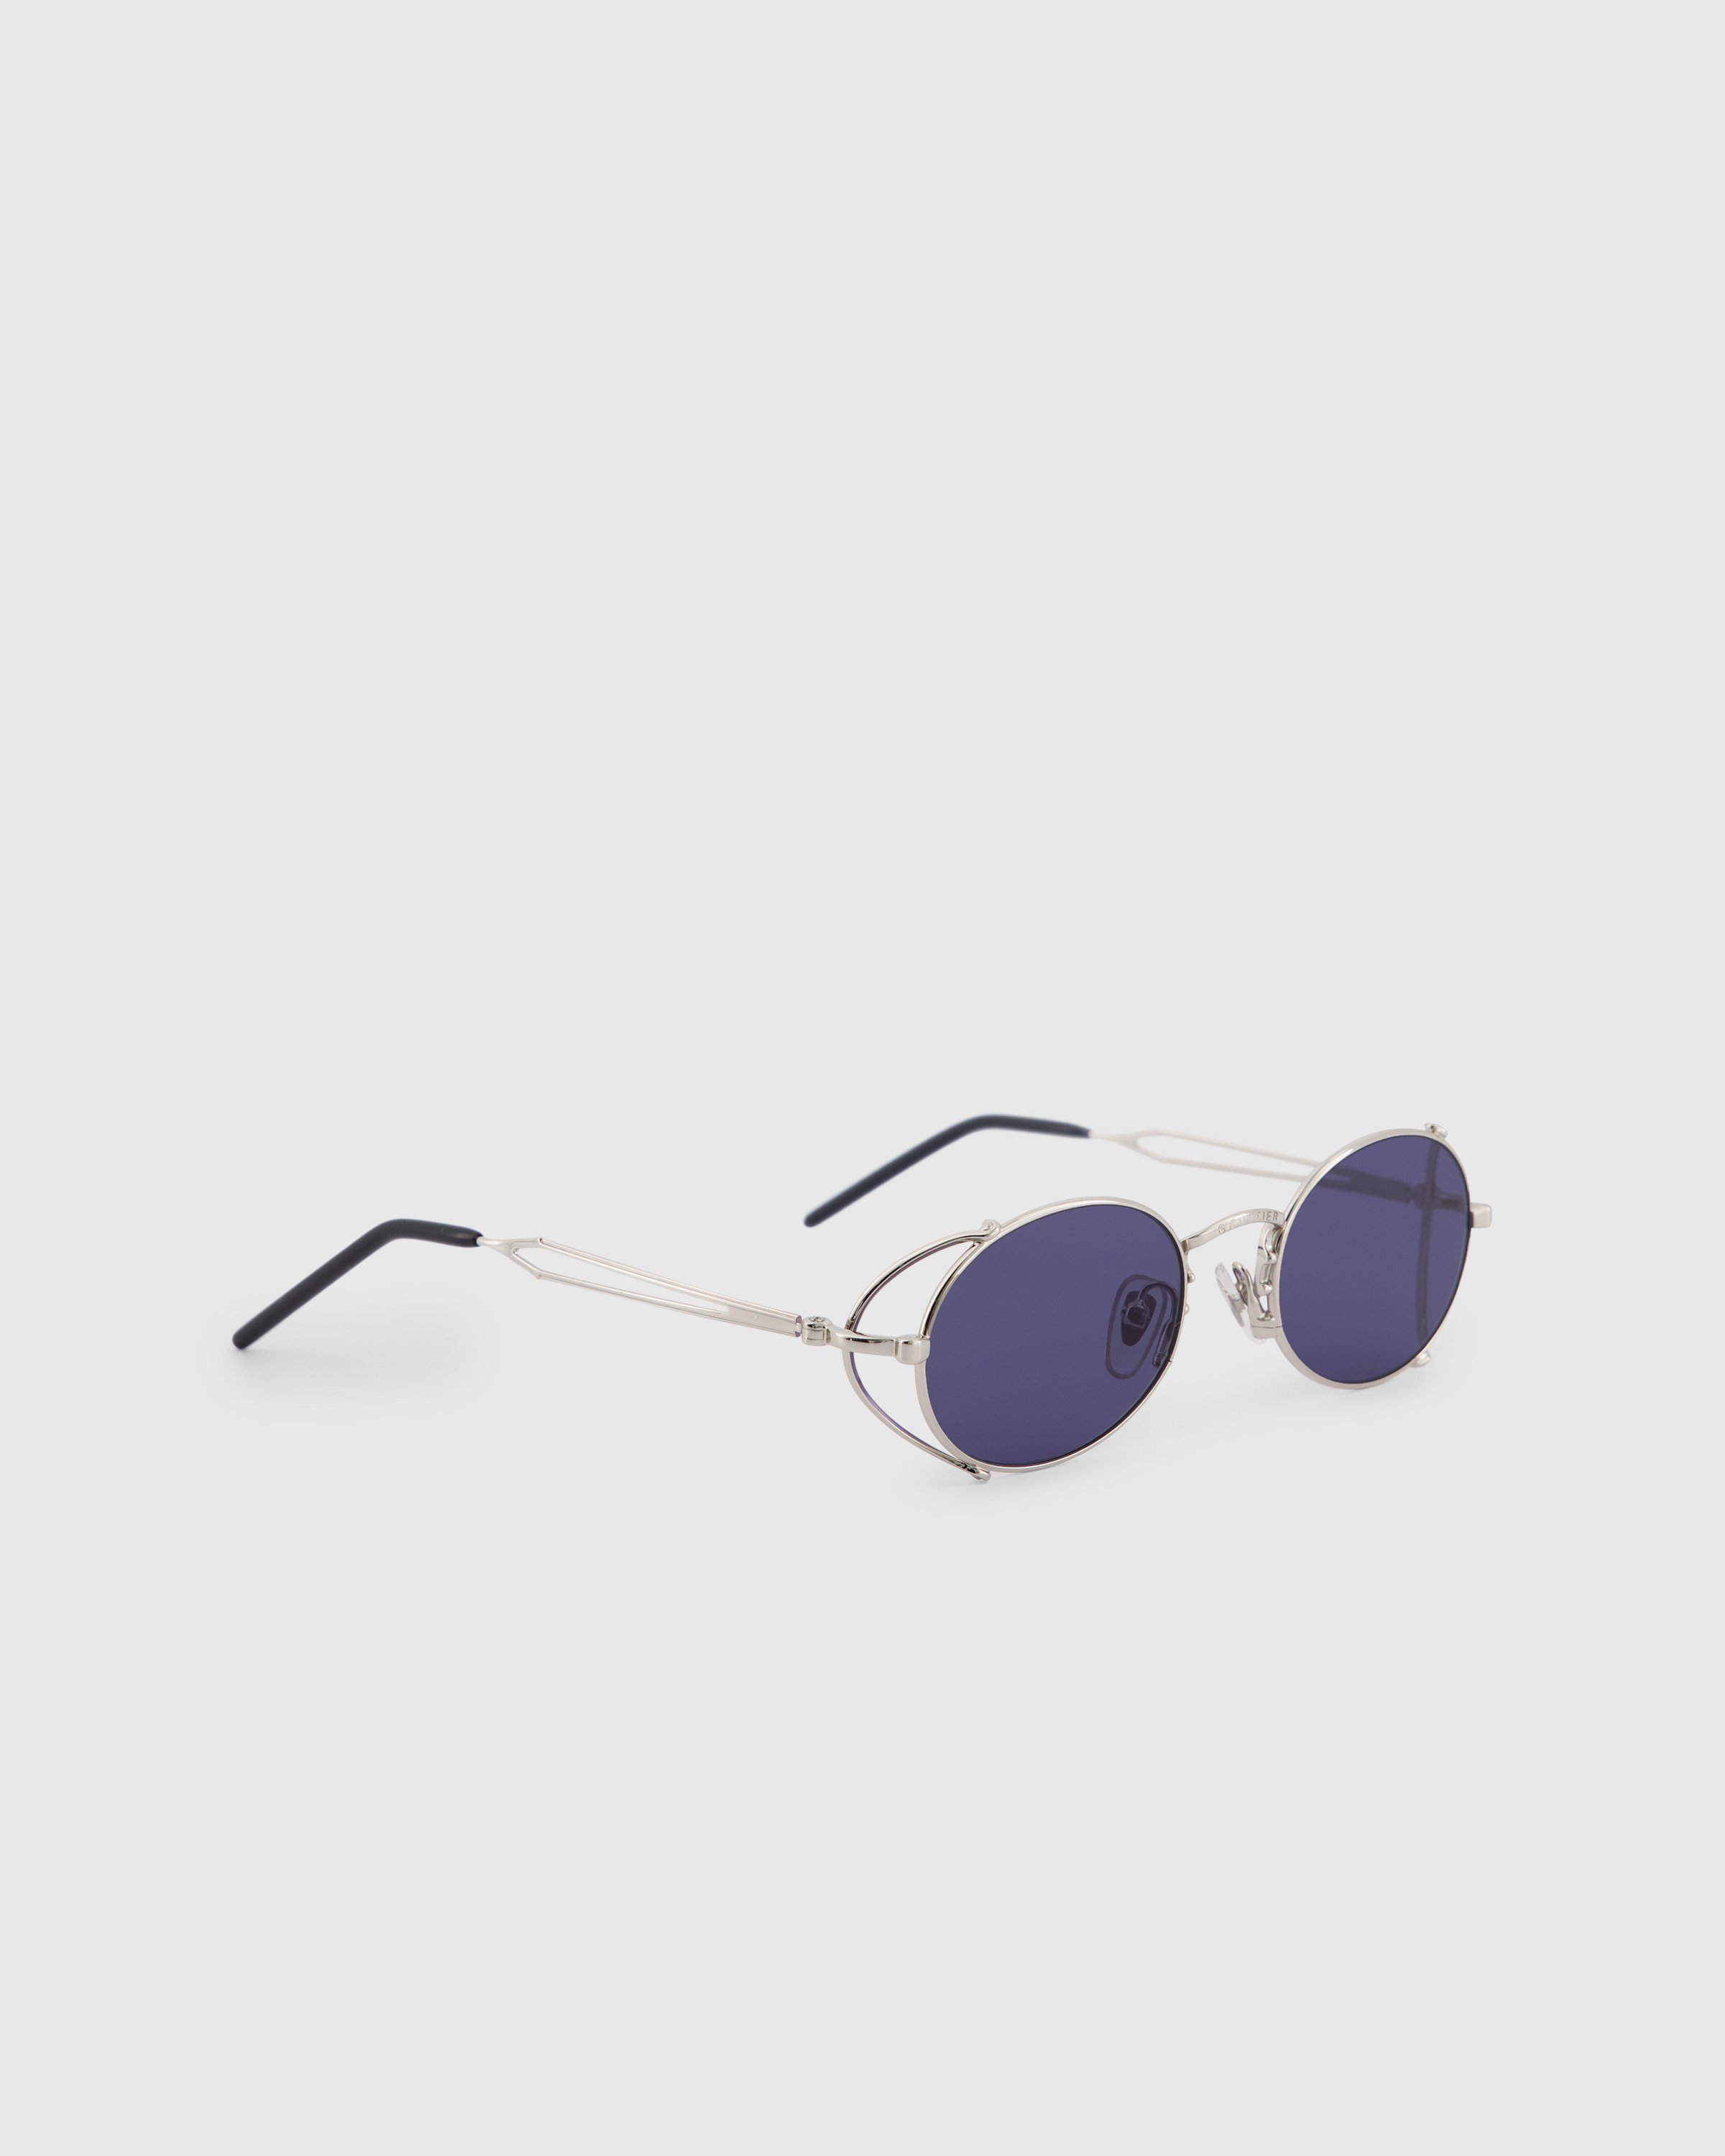 Jean Paul Gaultier x Burna Boy - 55-3175 Arceau Sunglasses Silver - Accessories - Silver - Image 2